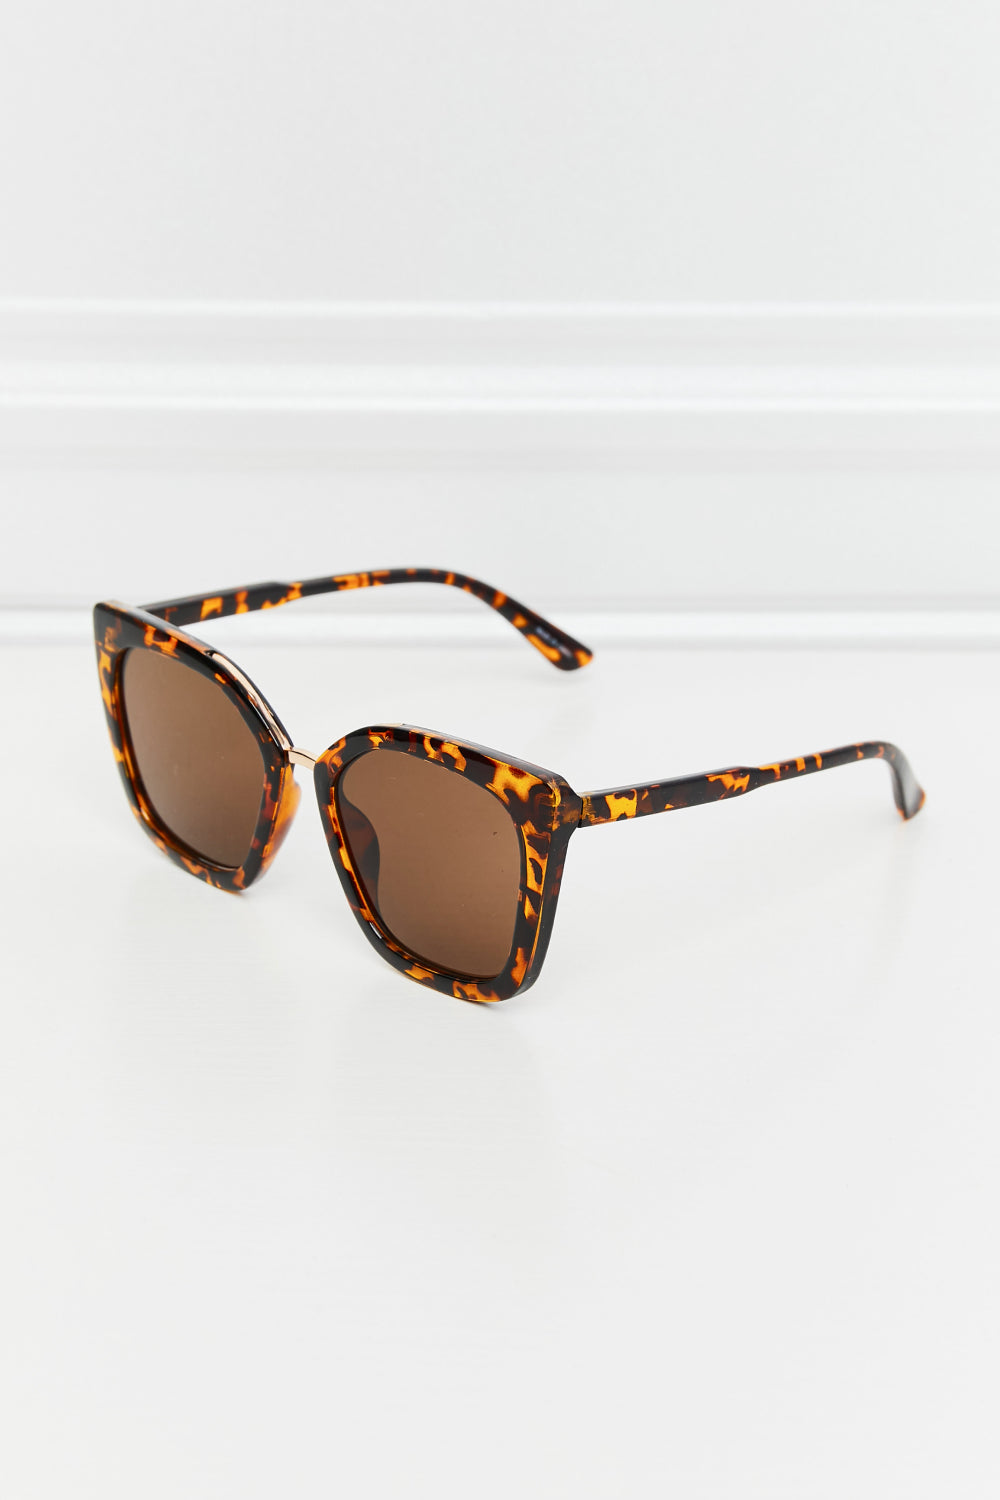 Cat Eye Full Rim Polycarbonate Sunglasses - Tangerine / One Size Girl Code